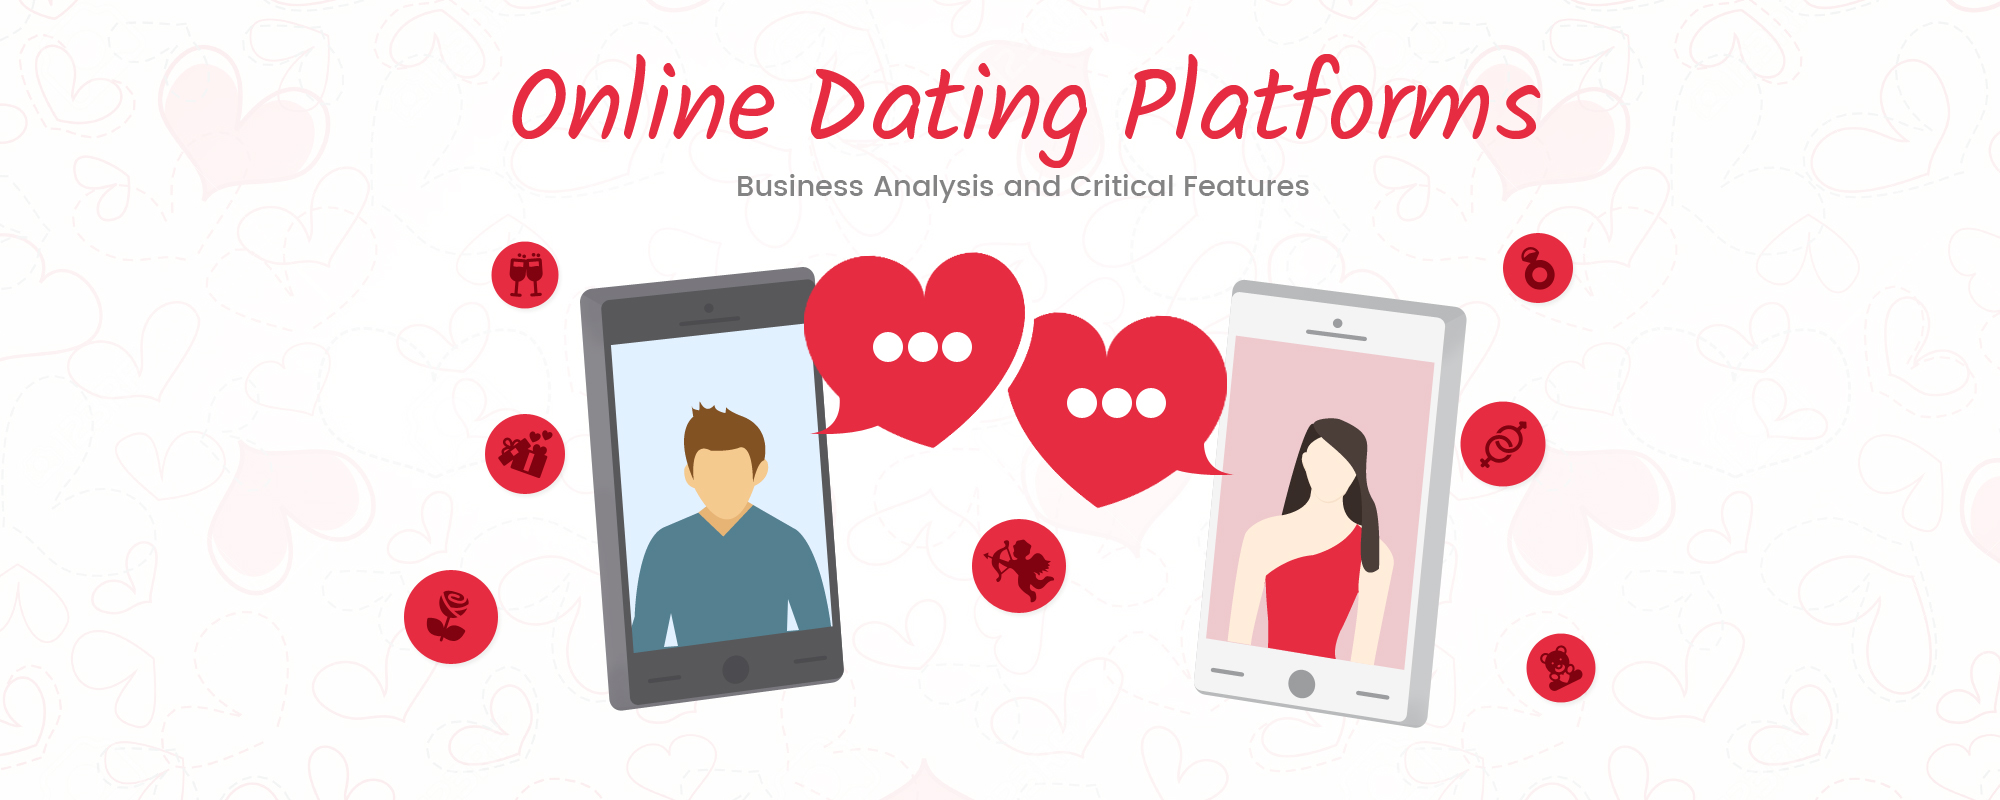 BestSmmPanel Online Dating - 4 Major Advantages Of Online Dating Sites Online Dating Platform Main